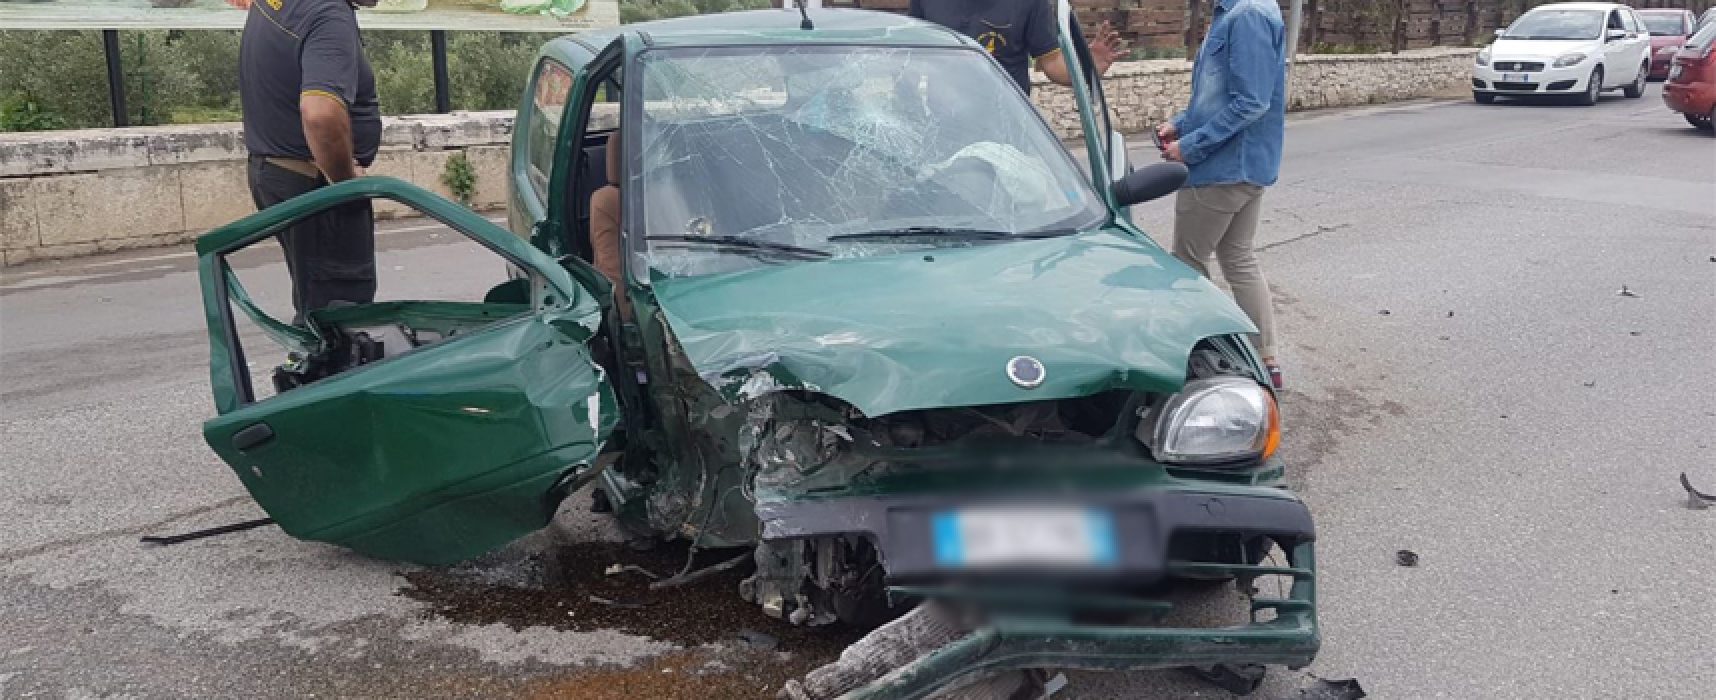 Auto si schianta contro muretto in via Imbriani, 24enne al pronto soccorso